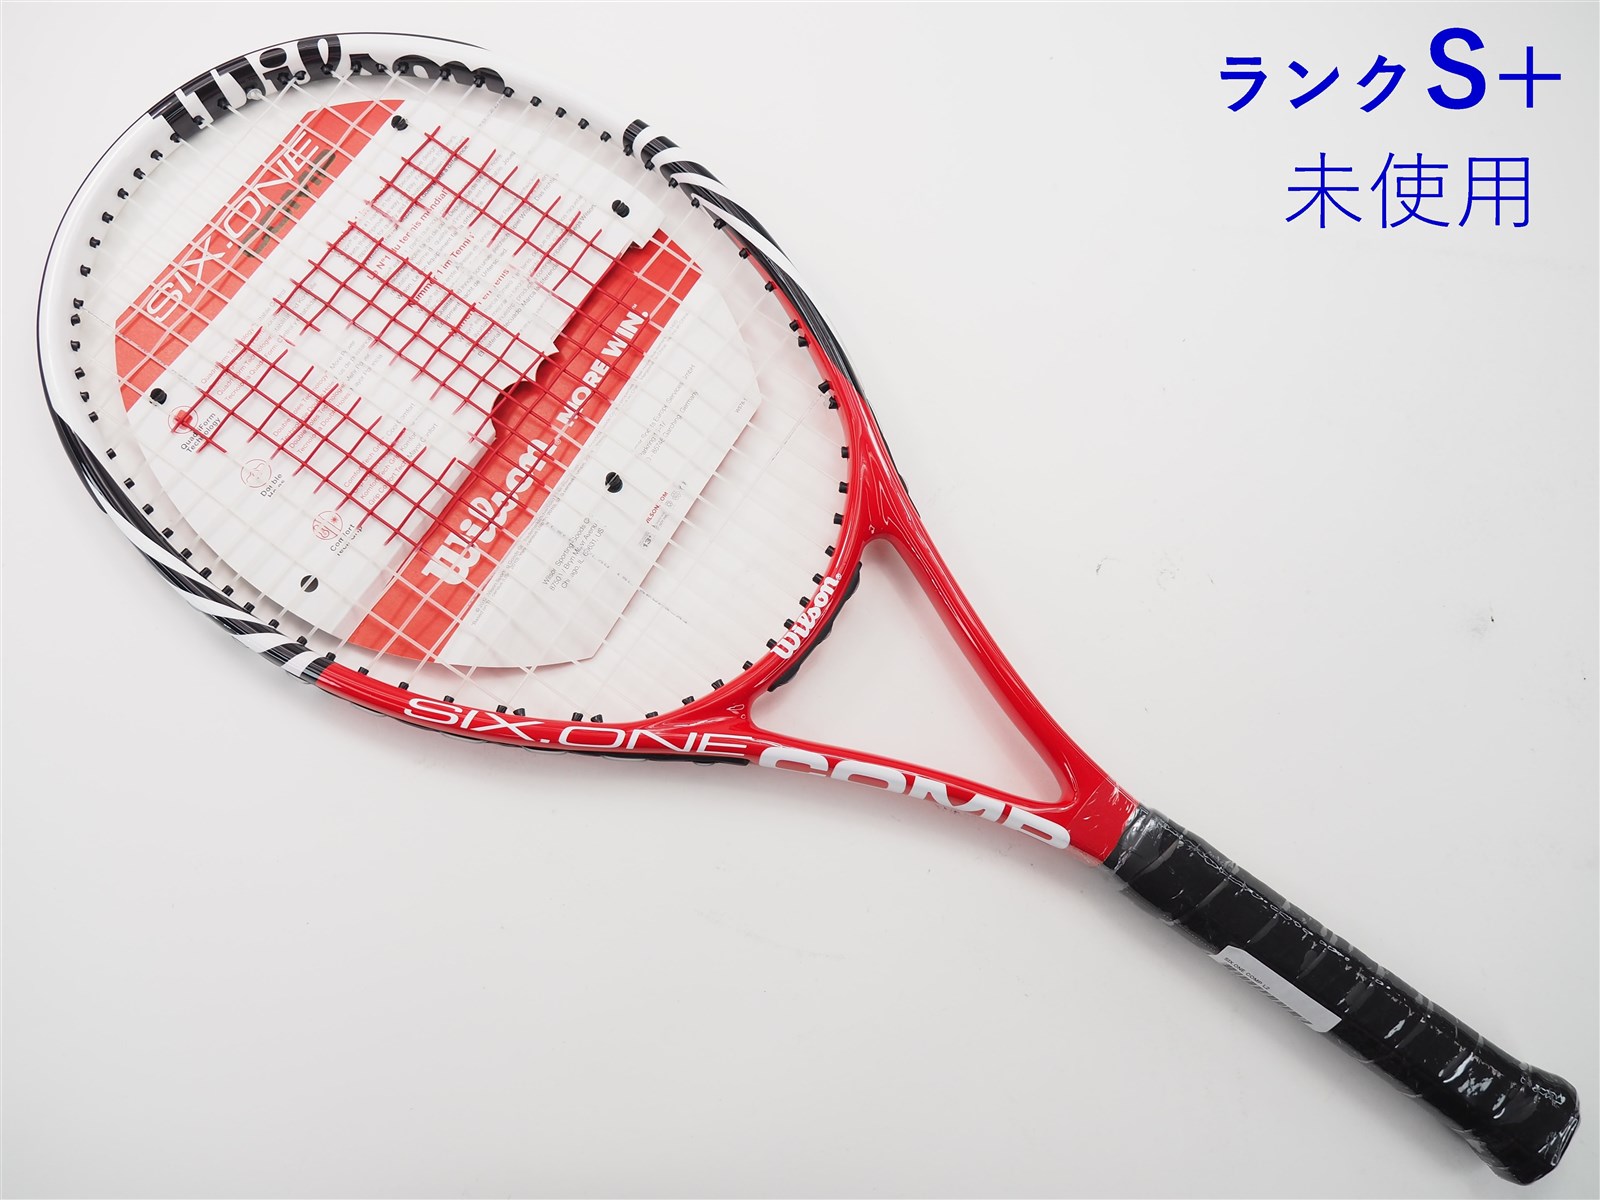 テニスラケット ウィルソン シックス ツー BLX 110 (G2)WILSON SIX.TWO BLX 110G2装着グリップ